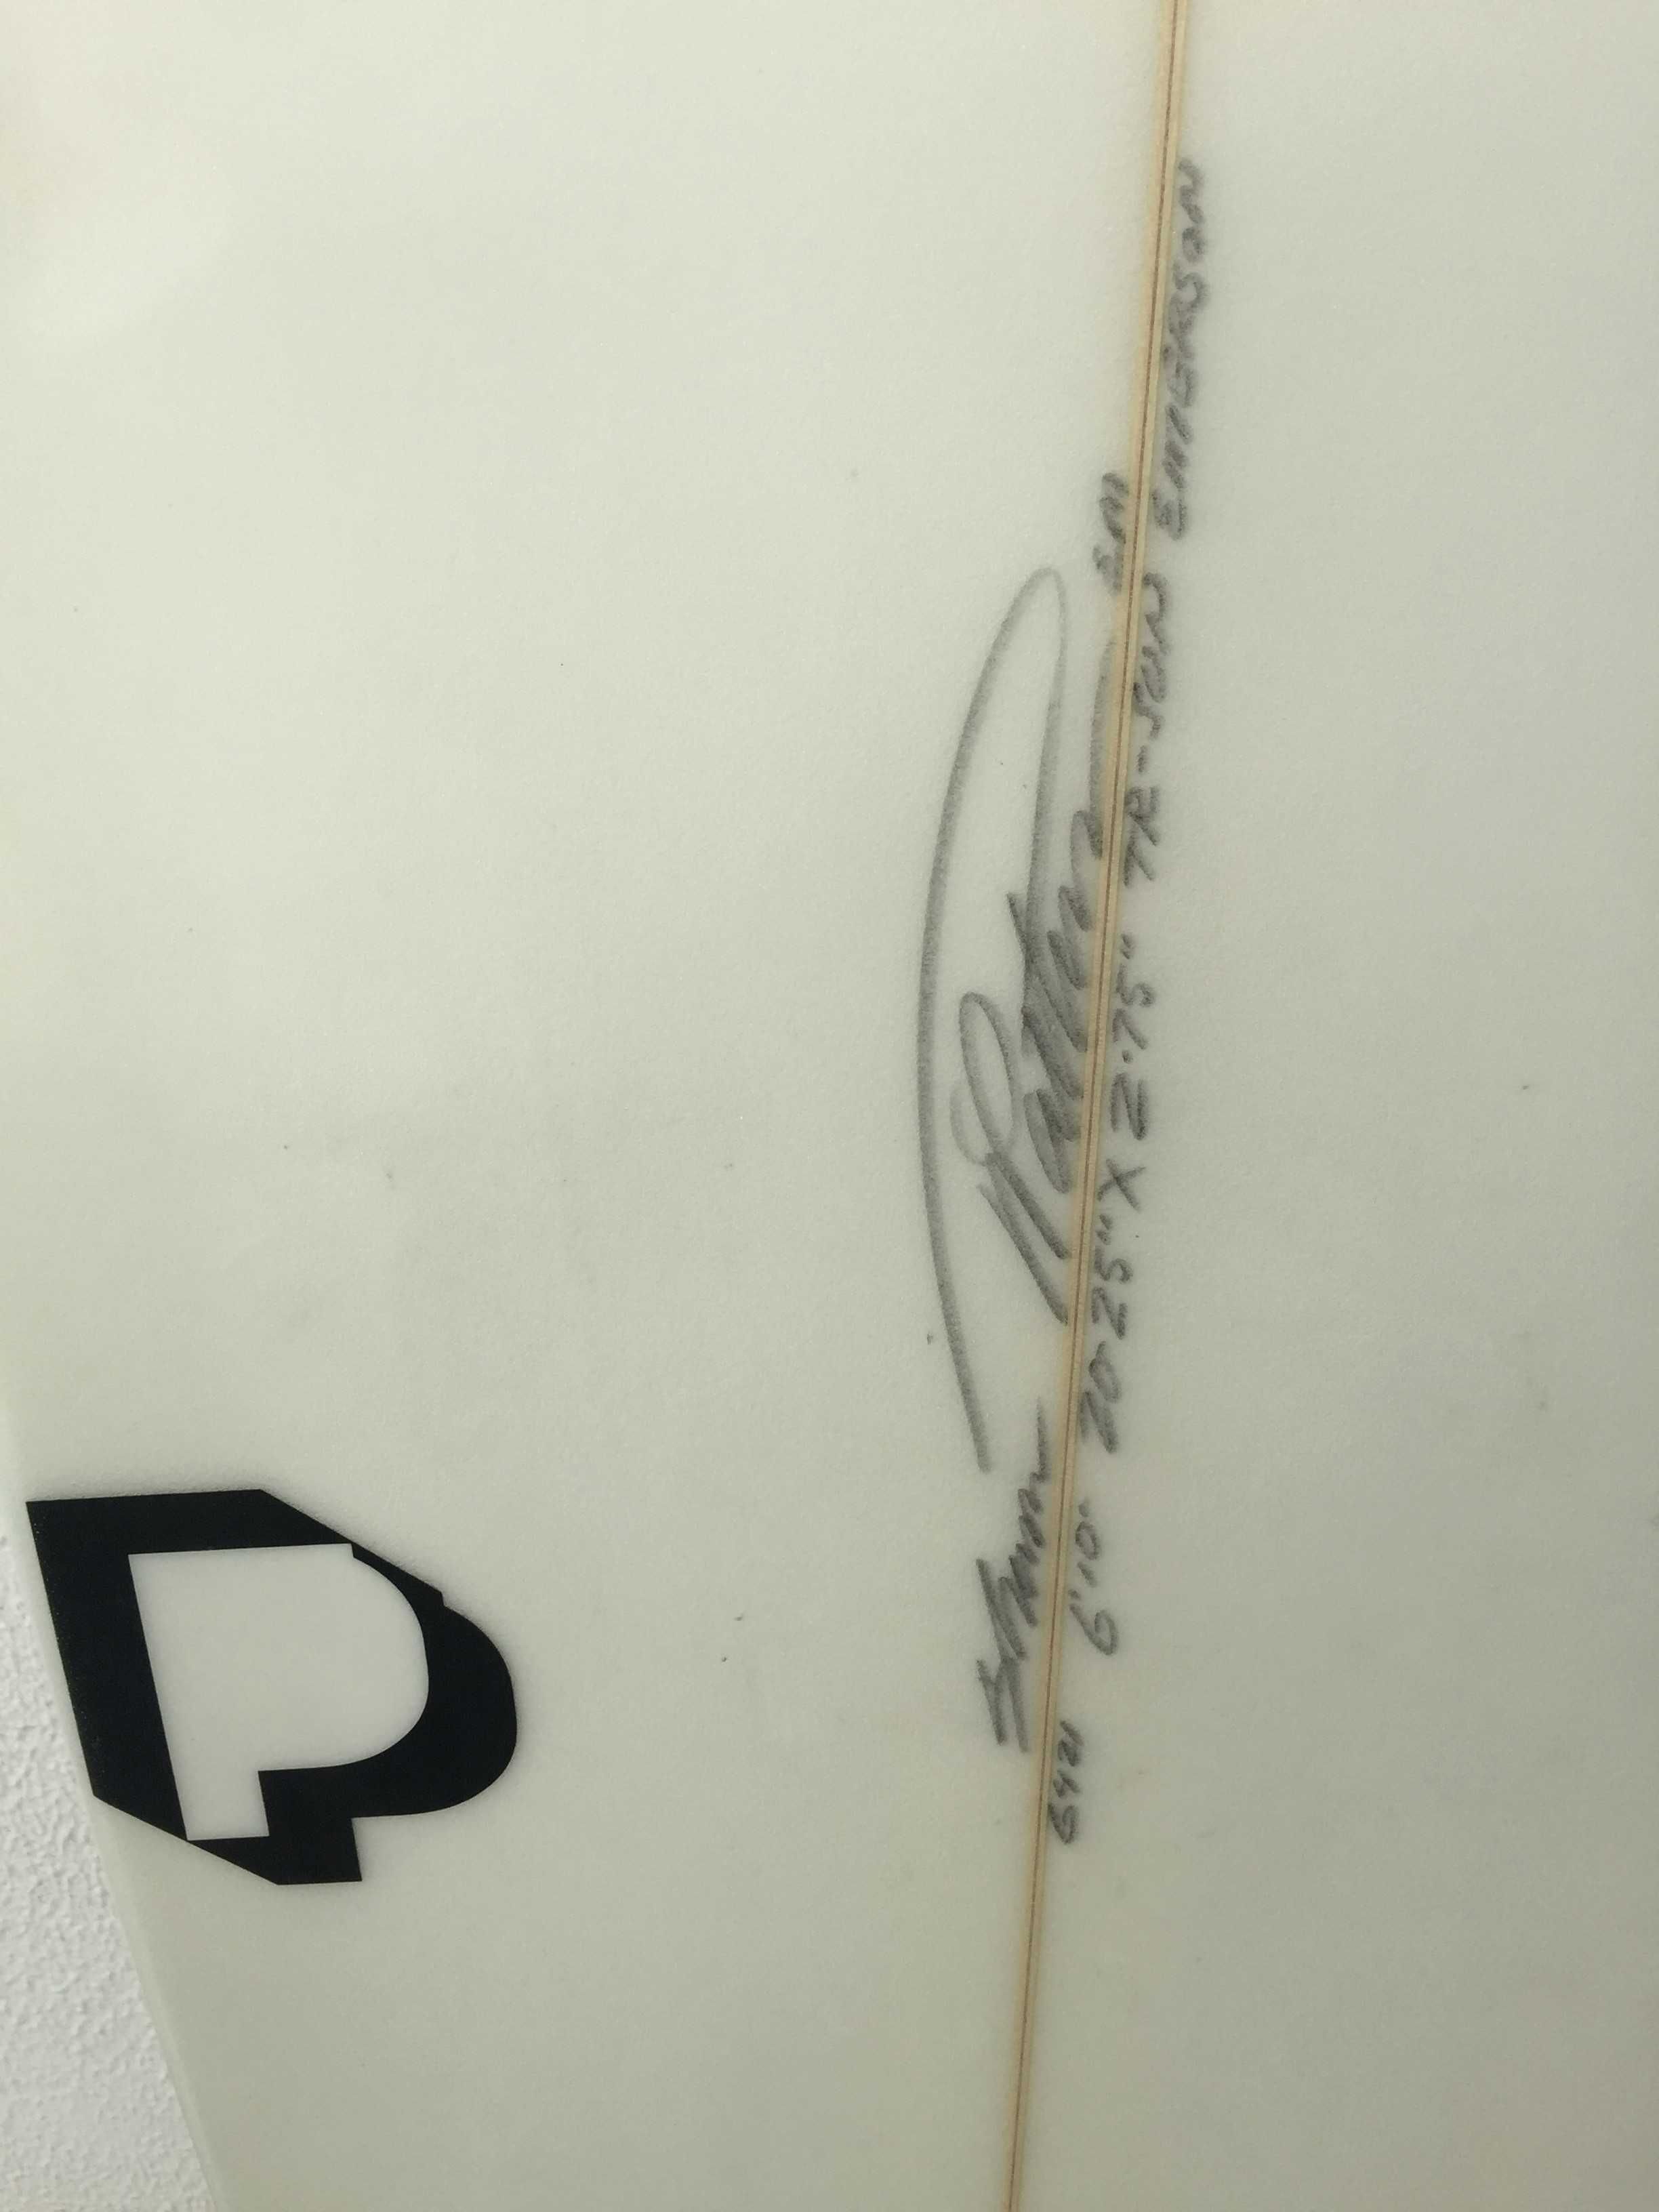 Prancha de Surf Polen 6,10, T. Pattersson em 2º mão, praticamente nova